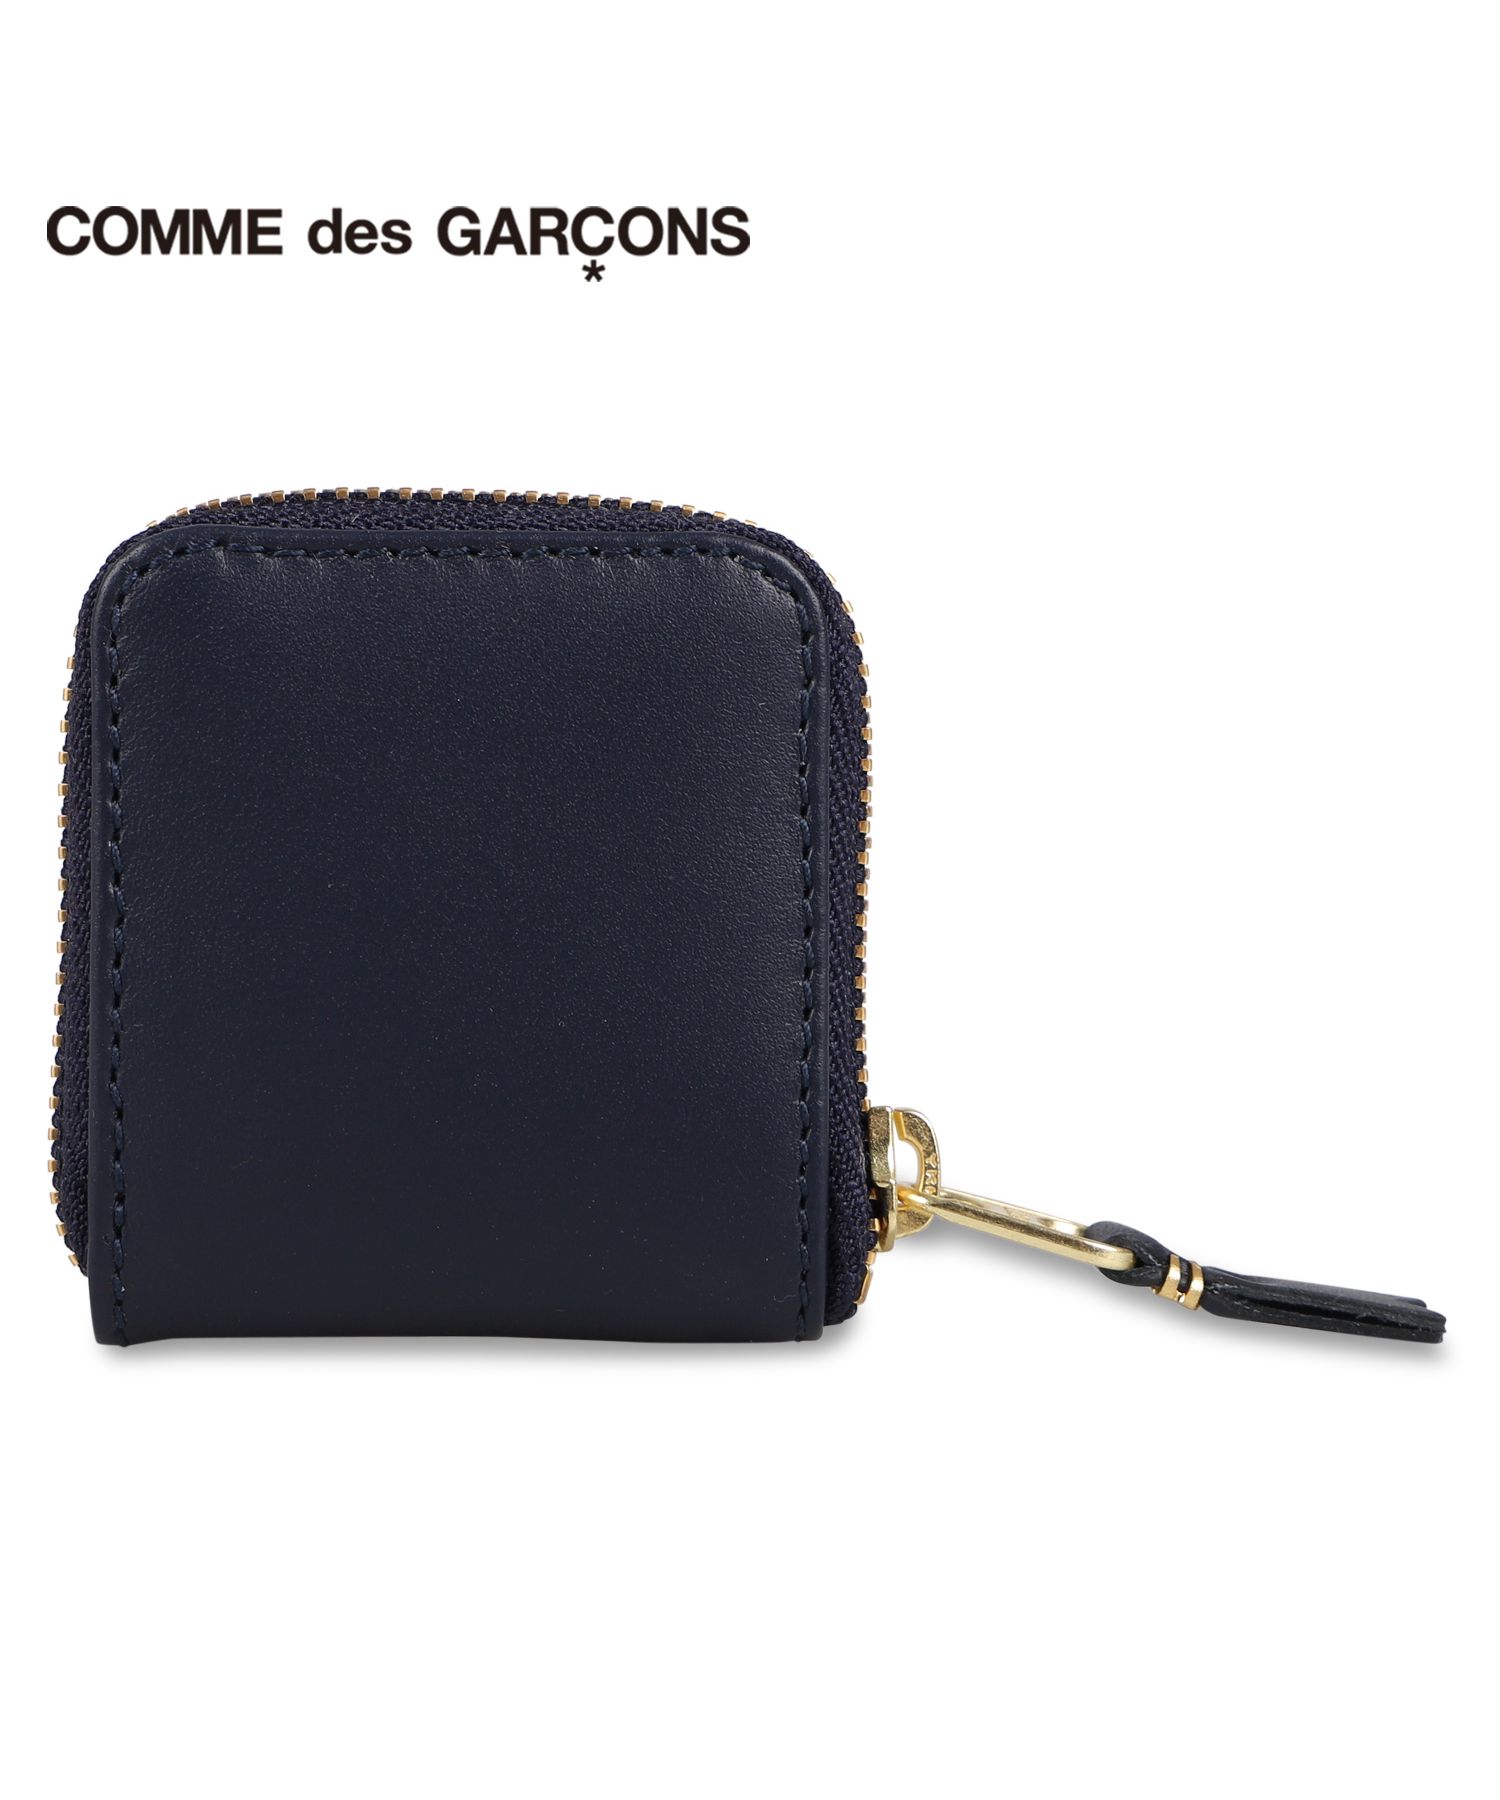 重量80g【新品未使用】 COMME des GARCONS コムデギャルソン 財布 コインケース 小銭入れ SA5100ZP 【RED】